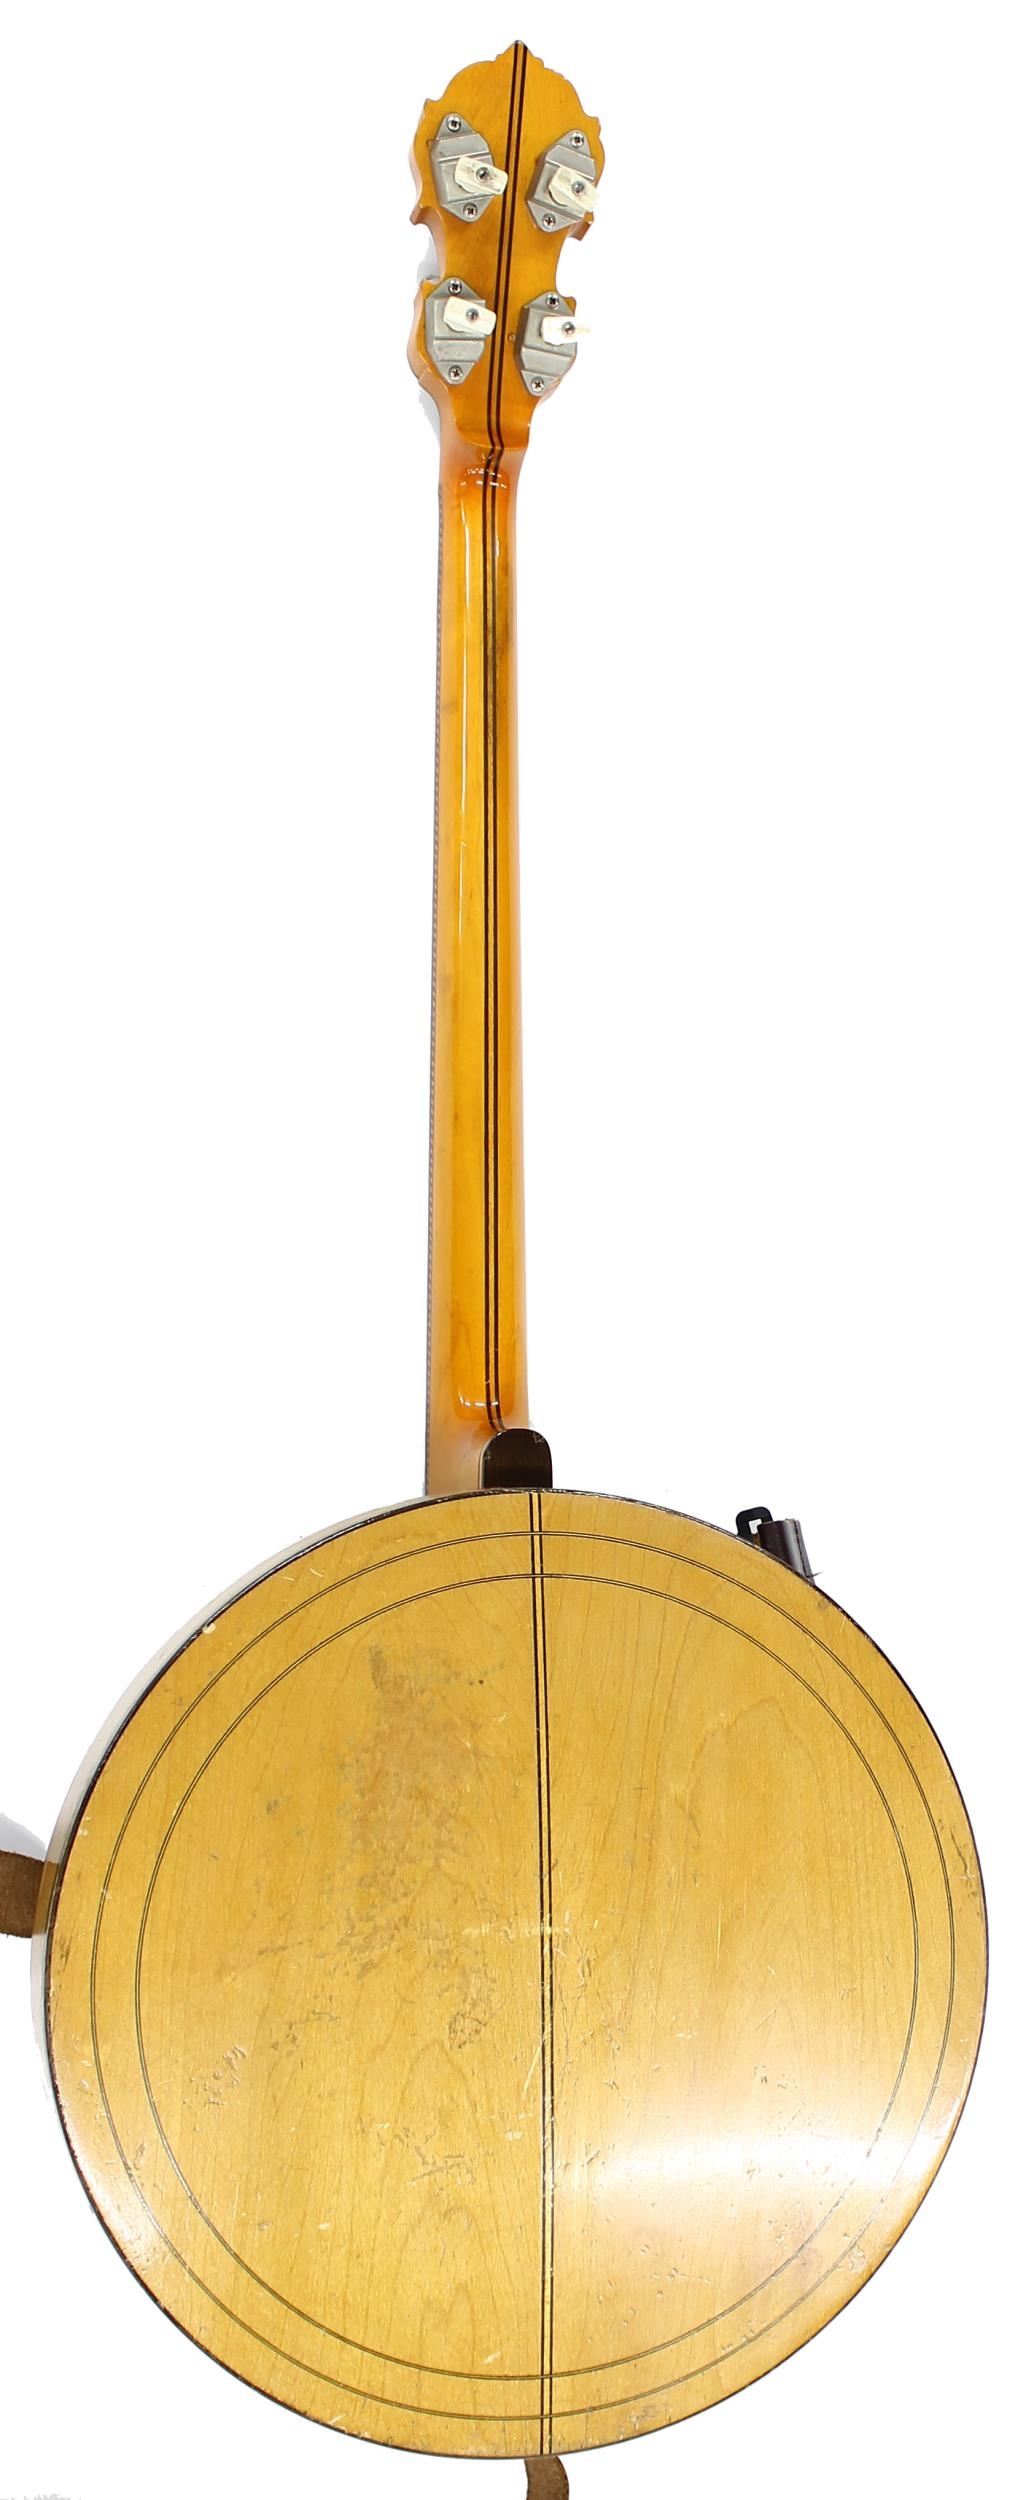 William Lange Paramount Style A banjo, with ebony and boxwood banded maple resonator, 11" skin, - Image 2 of 2